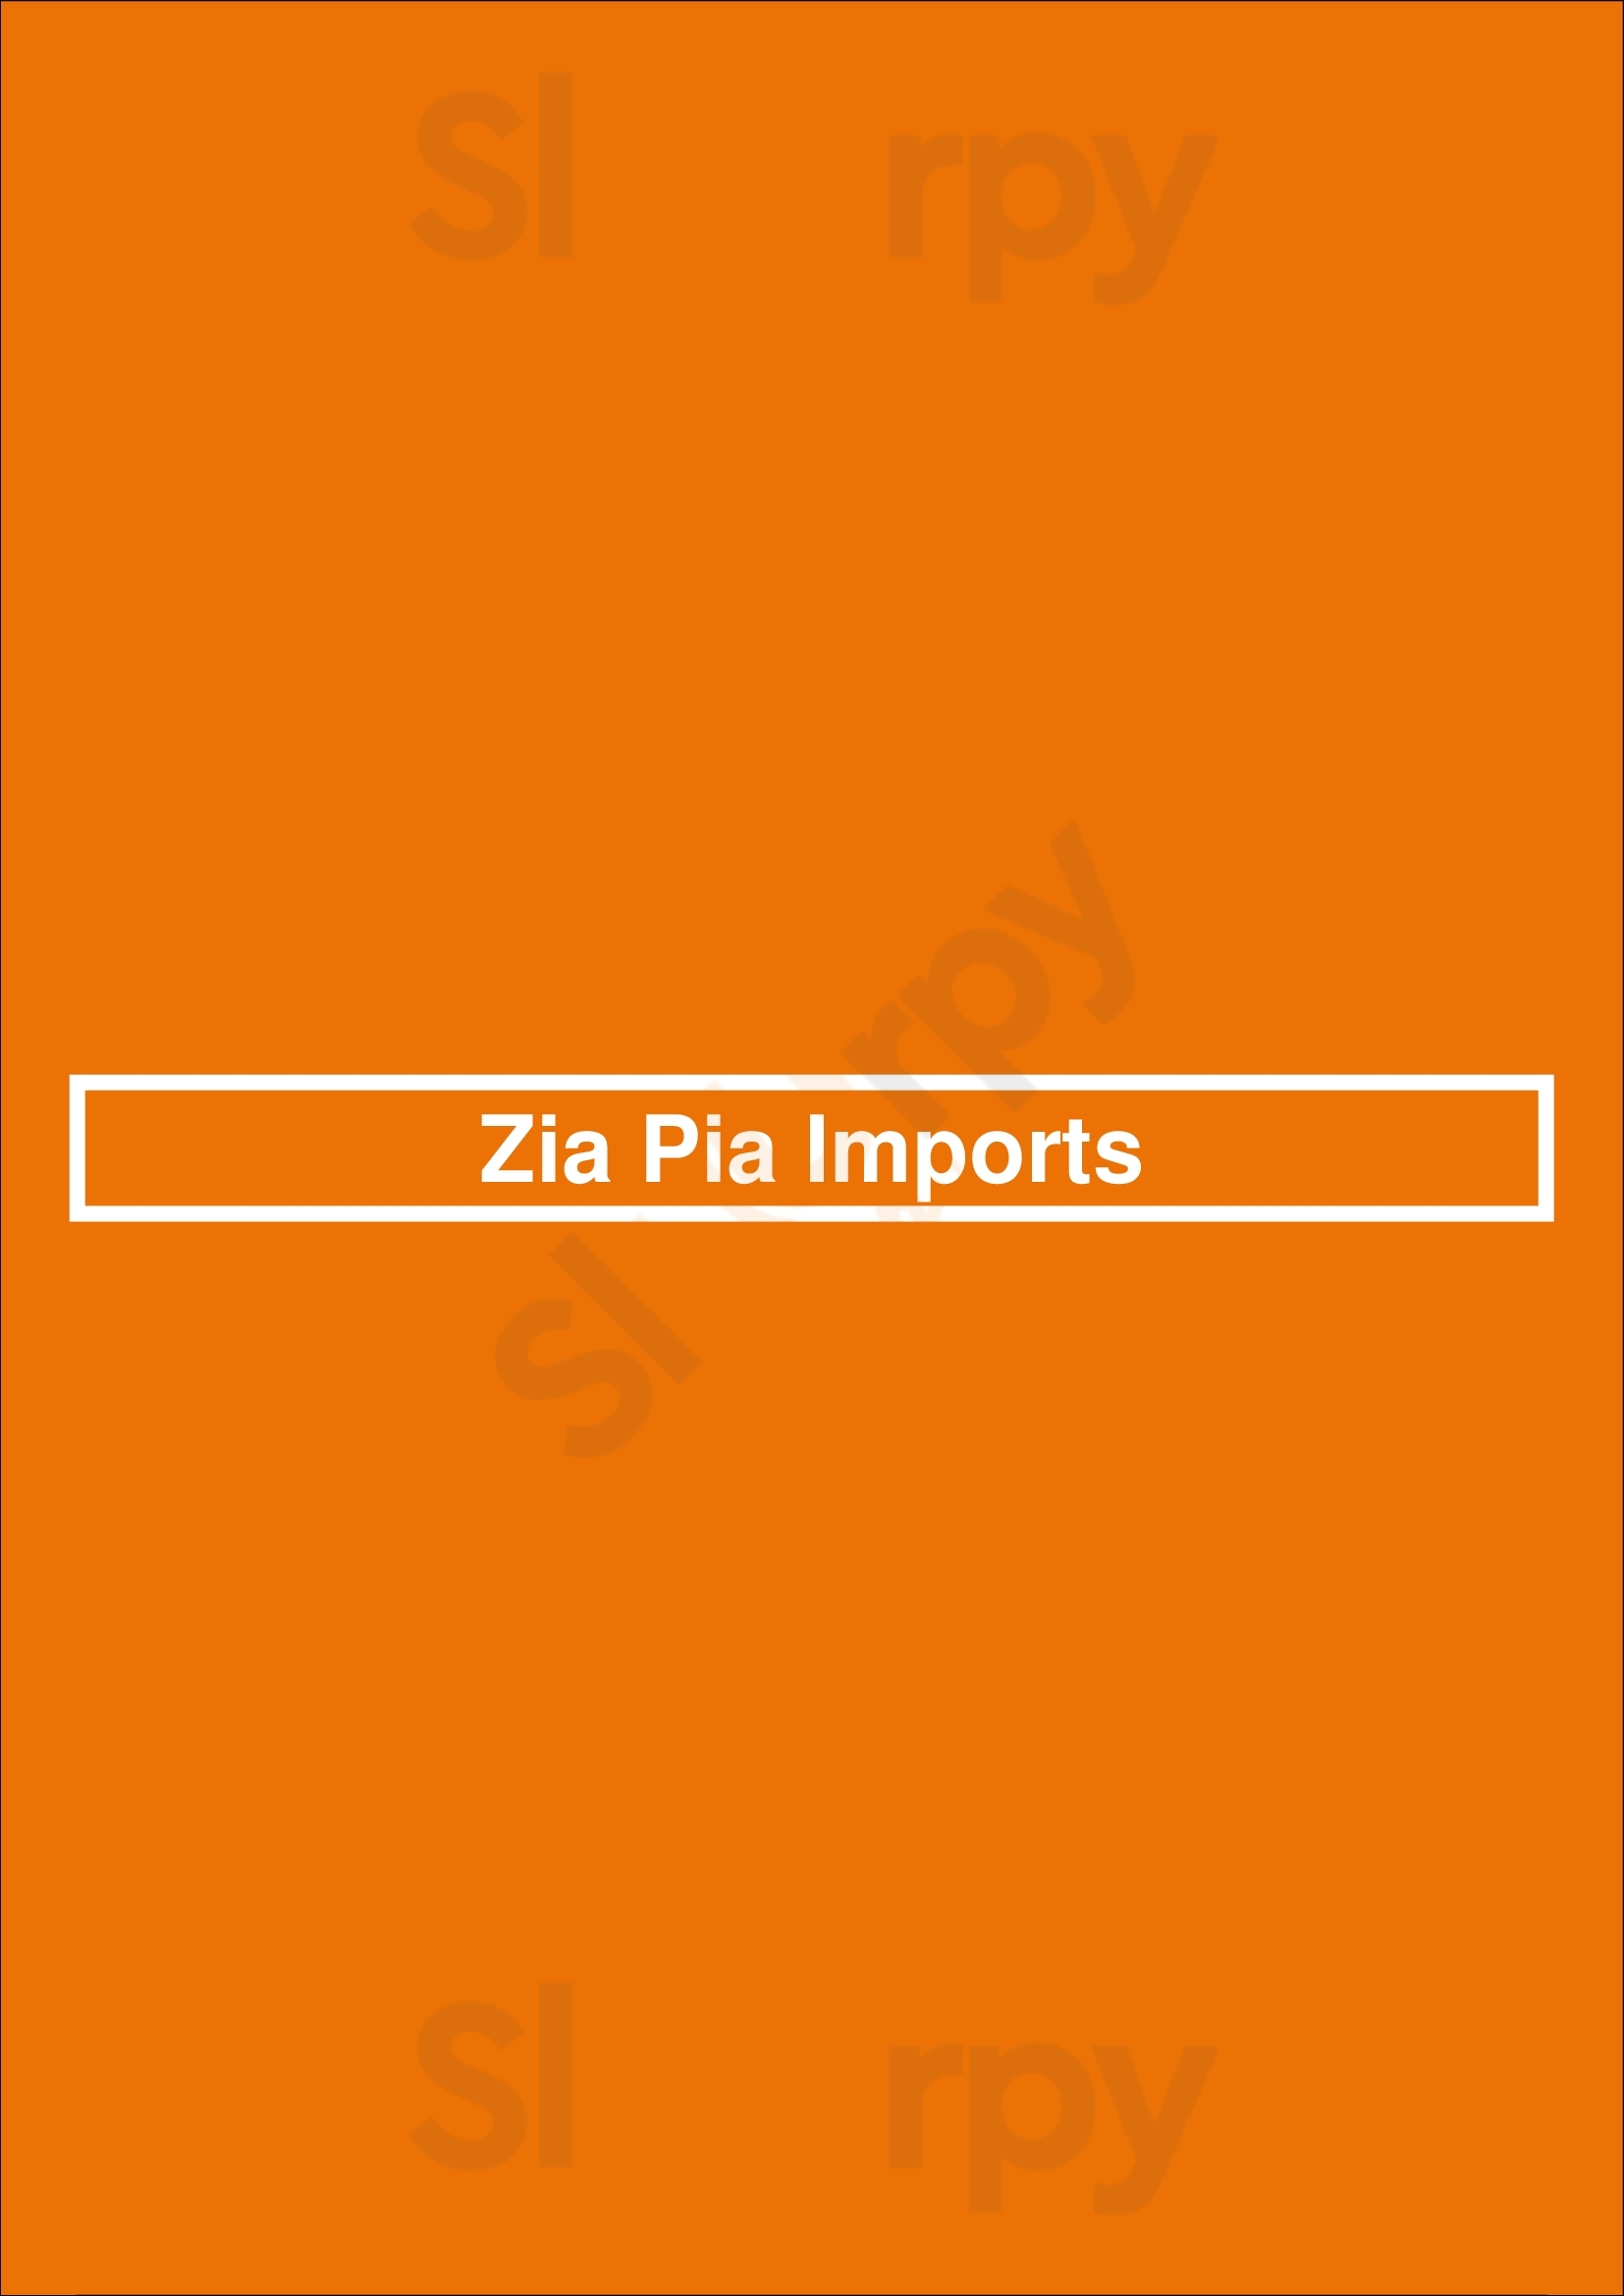 Zia Pia Imports And Italian Kitchen Charlotte Menu - 1